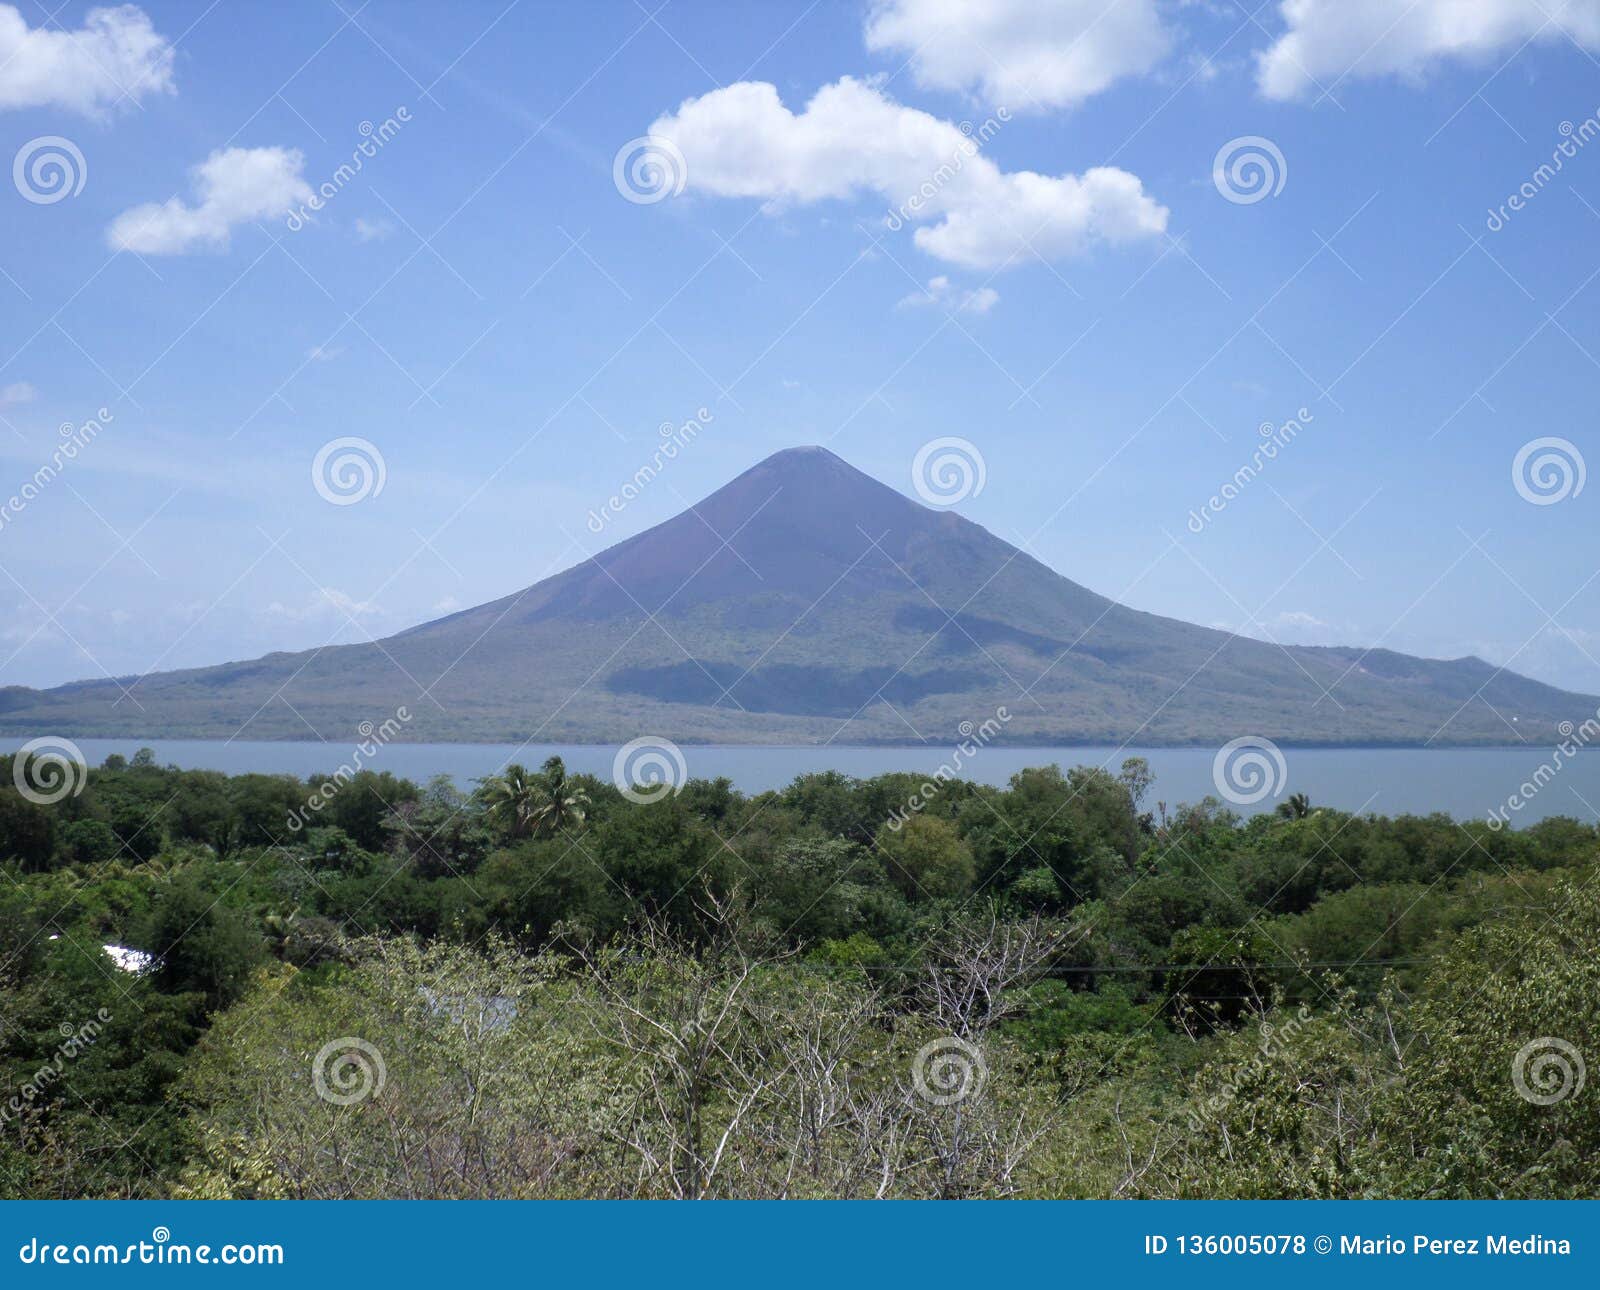 momotombo volcano, nicaragua